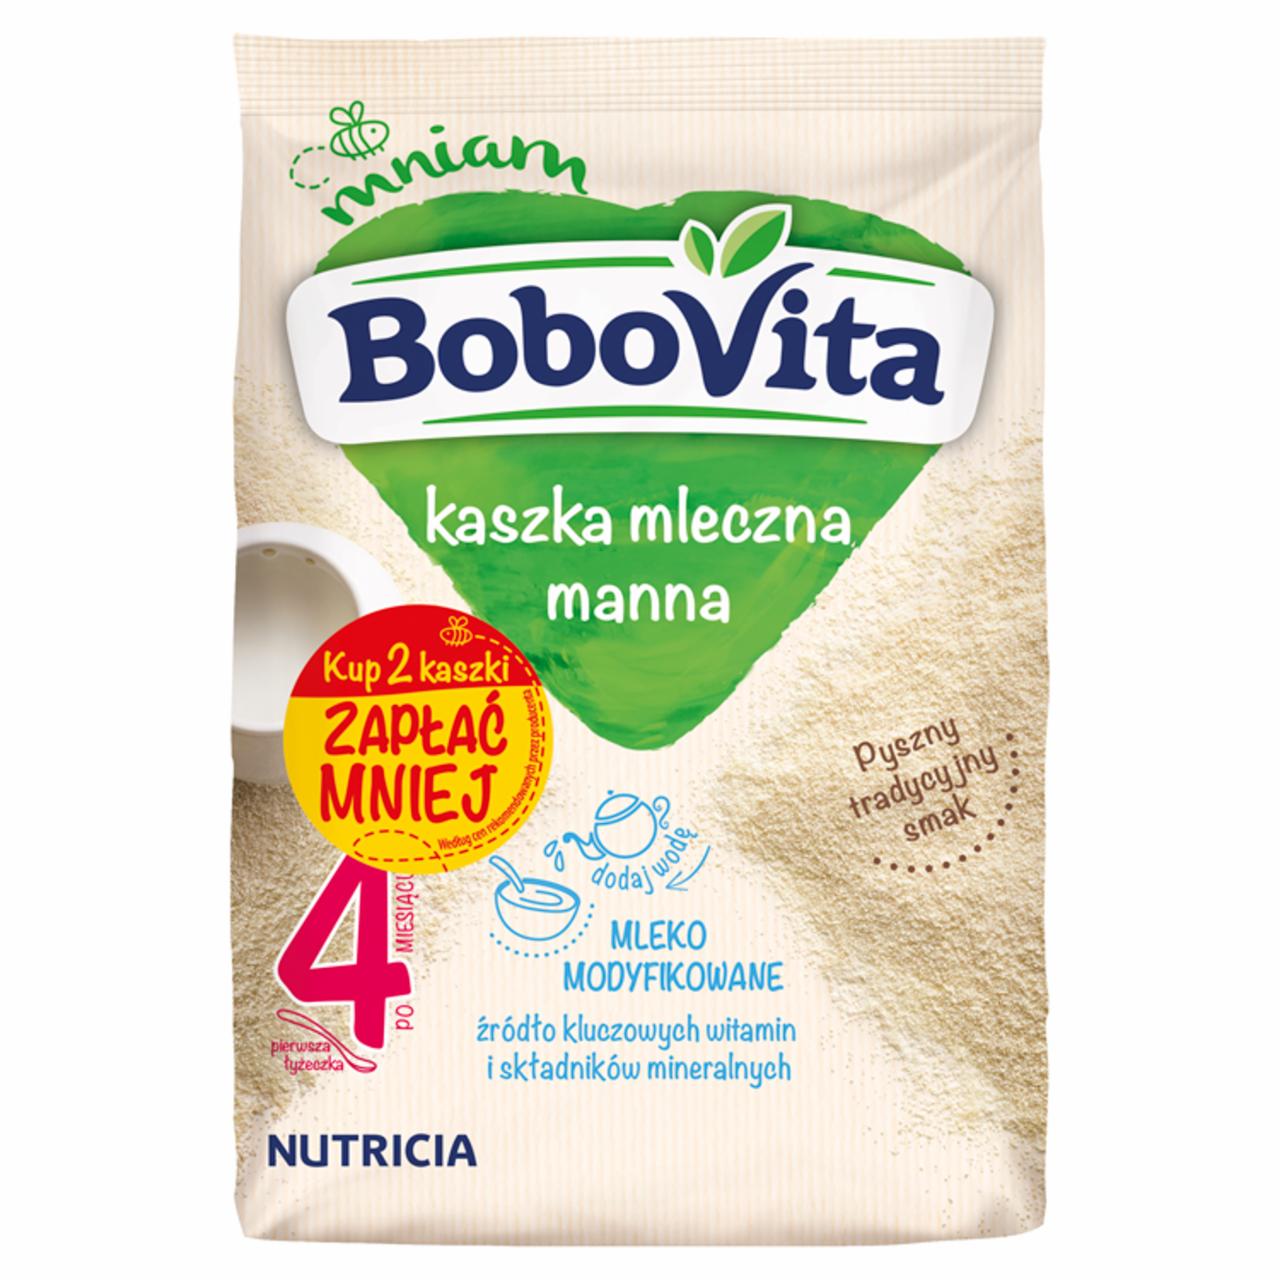 Zdjęcia - BoboVita Kaszka mleczna manna po 4 miesiącu 460 g (2 x 230 g)